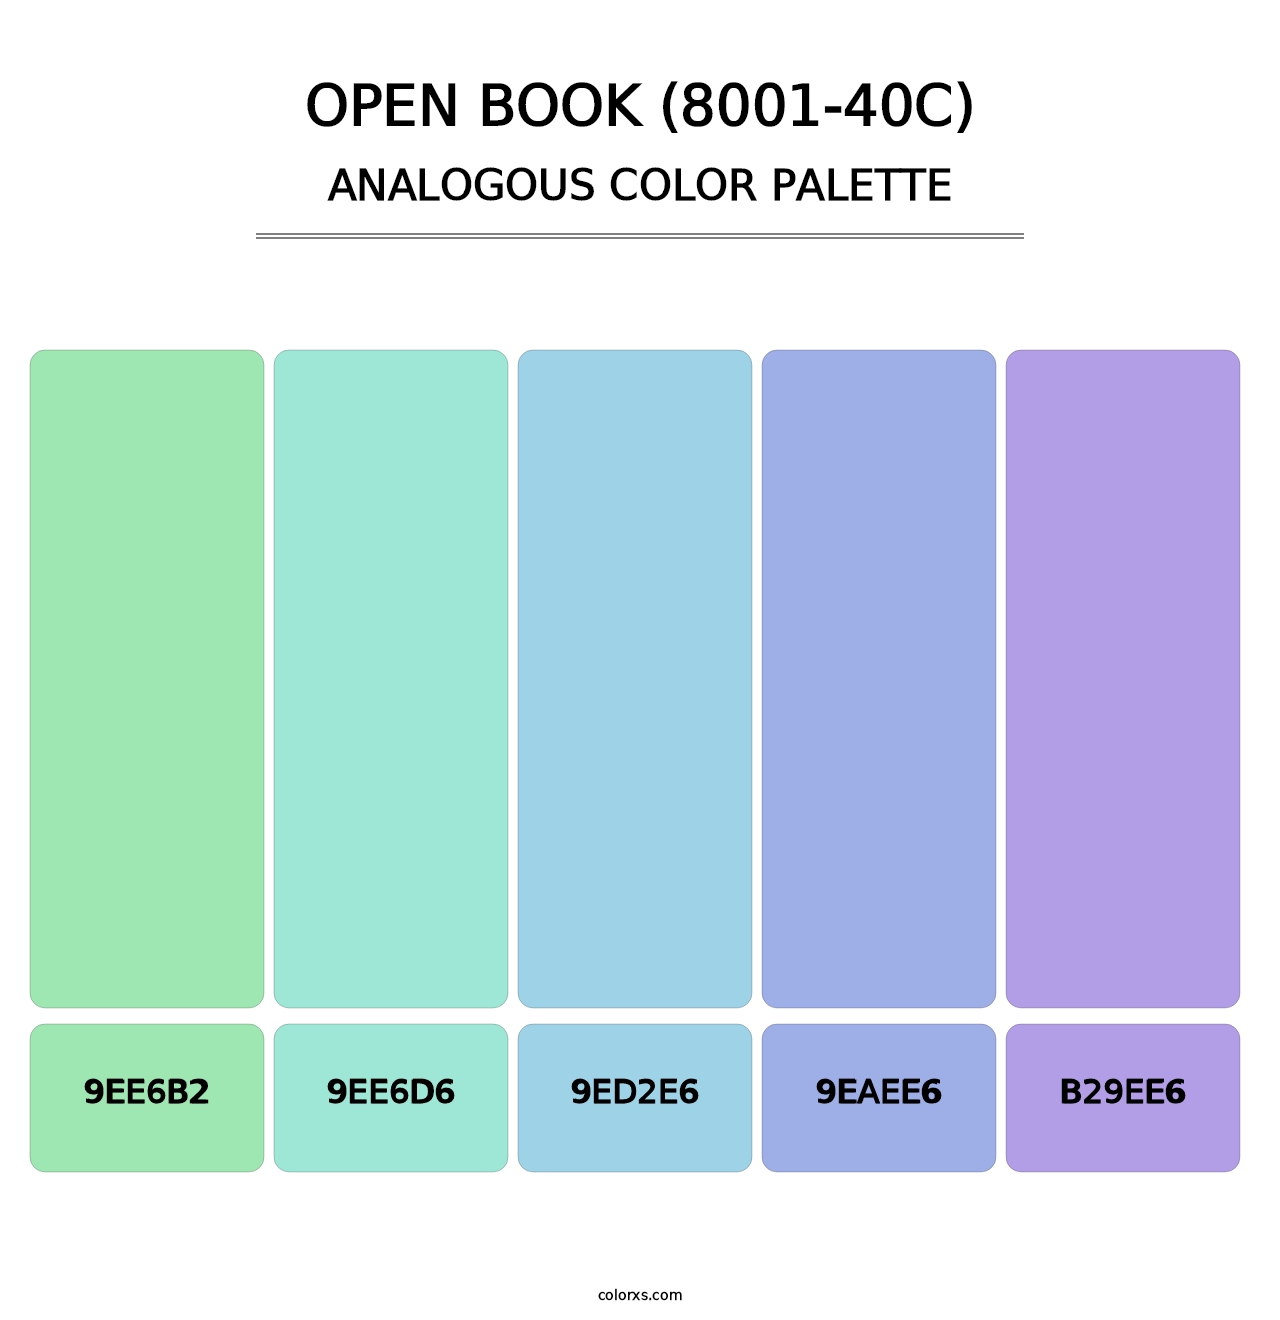 Open Book (8001-40C) - Analogous Color Palette